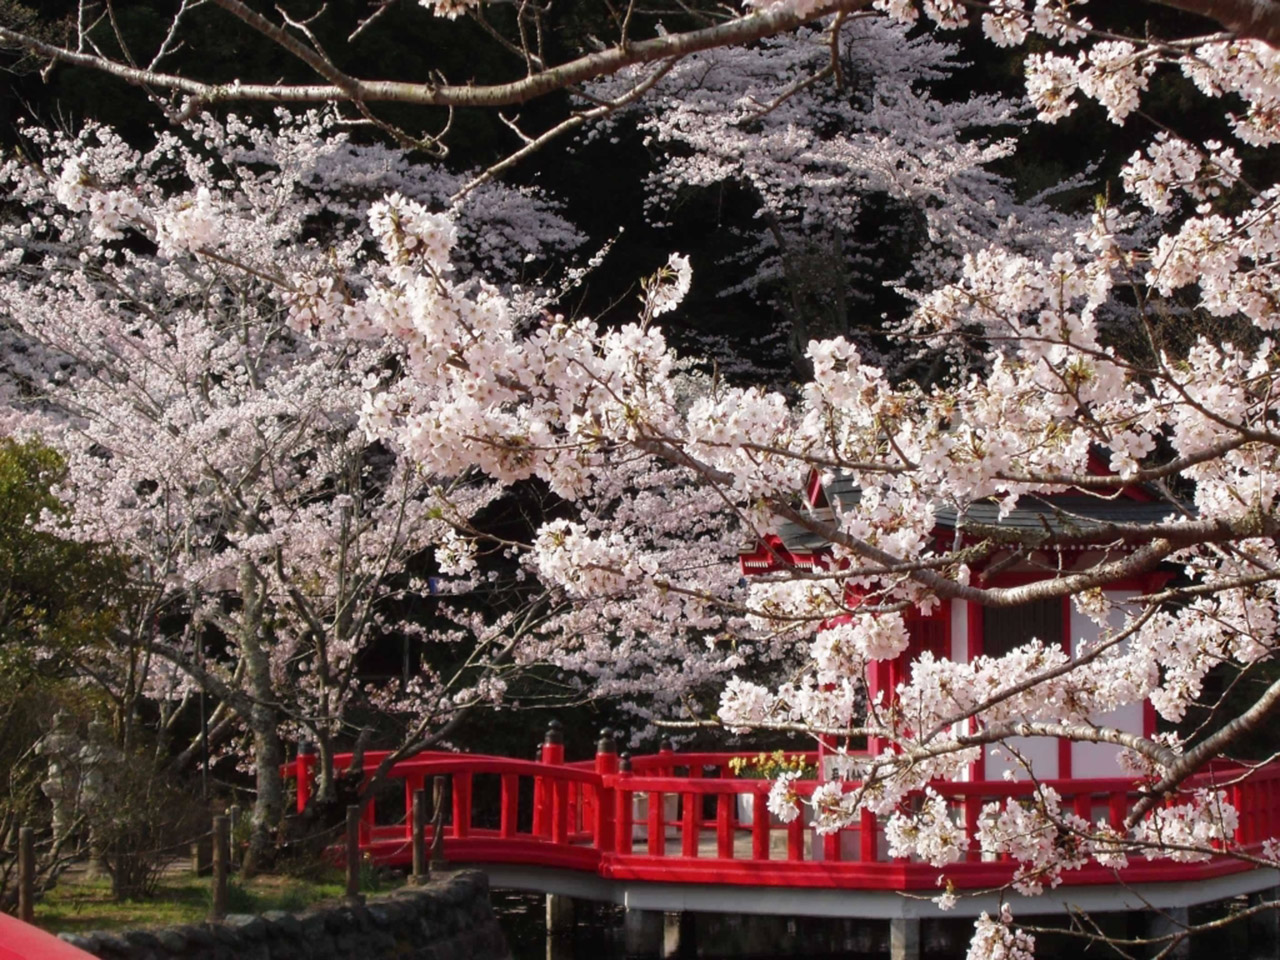 お花見特集 弁天湖の赤い橋の風情ある桜景色 茂原公園 Tabizine 人生に旅心を